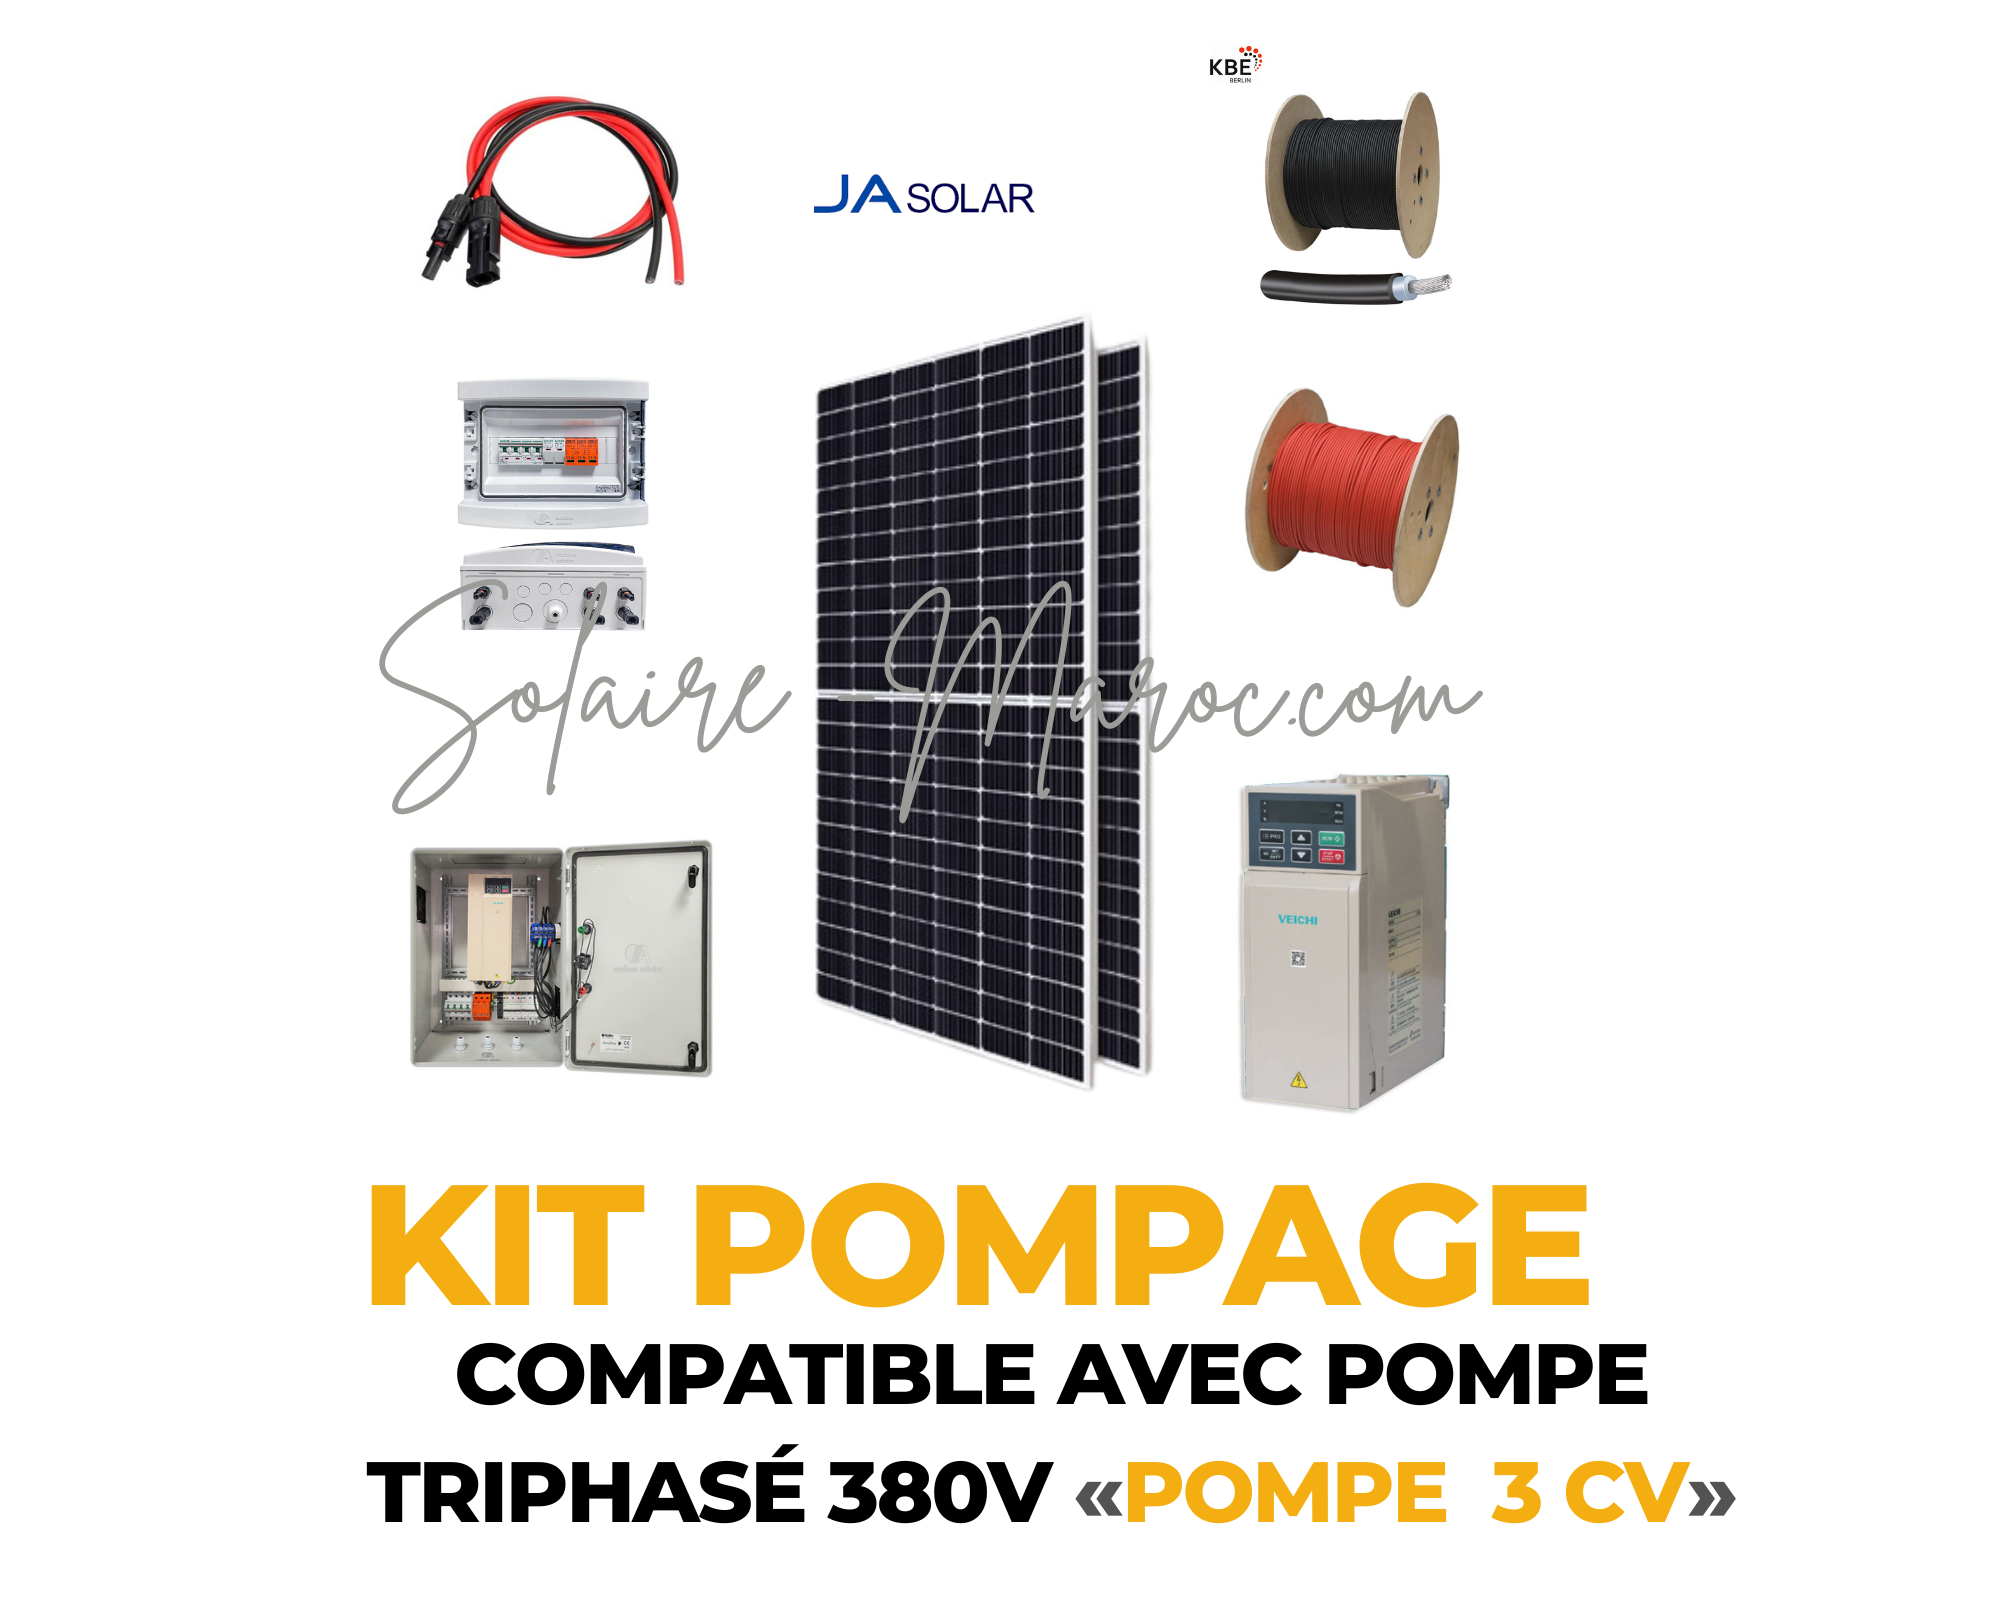 Kit Pompage compatible avec pompe Triphasé 380V pompe 3 CV